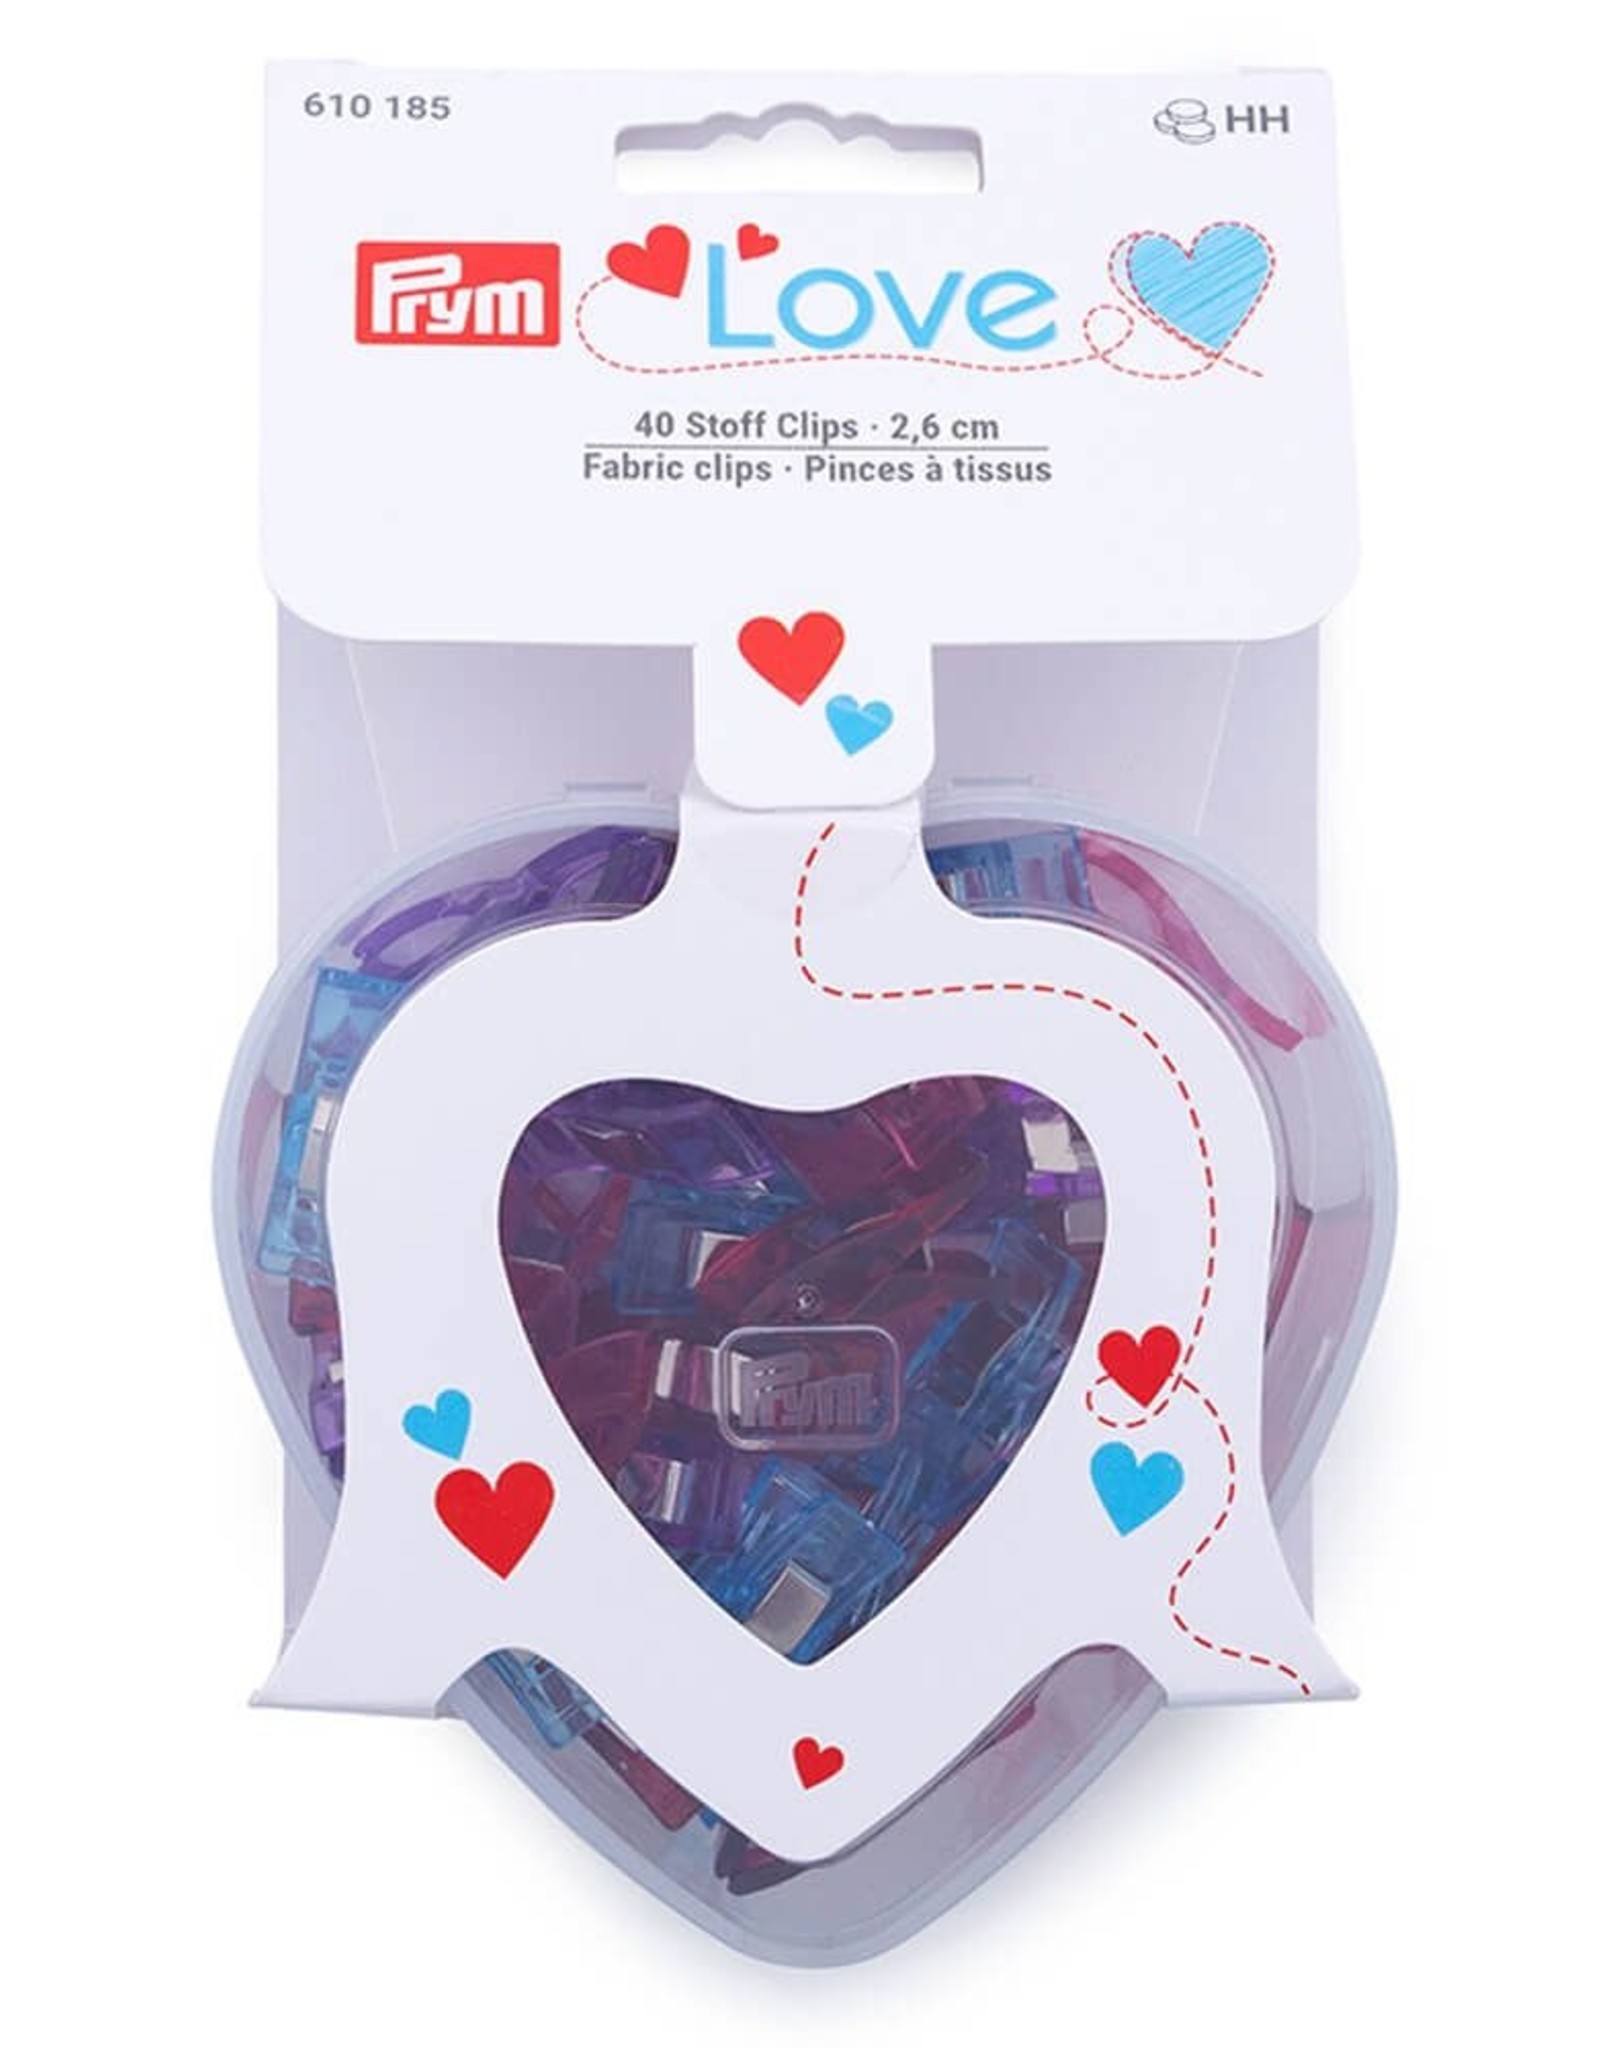 Prym Prym - Love stof clips 2,6cm, 40 stuks in doosje-610 185